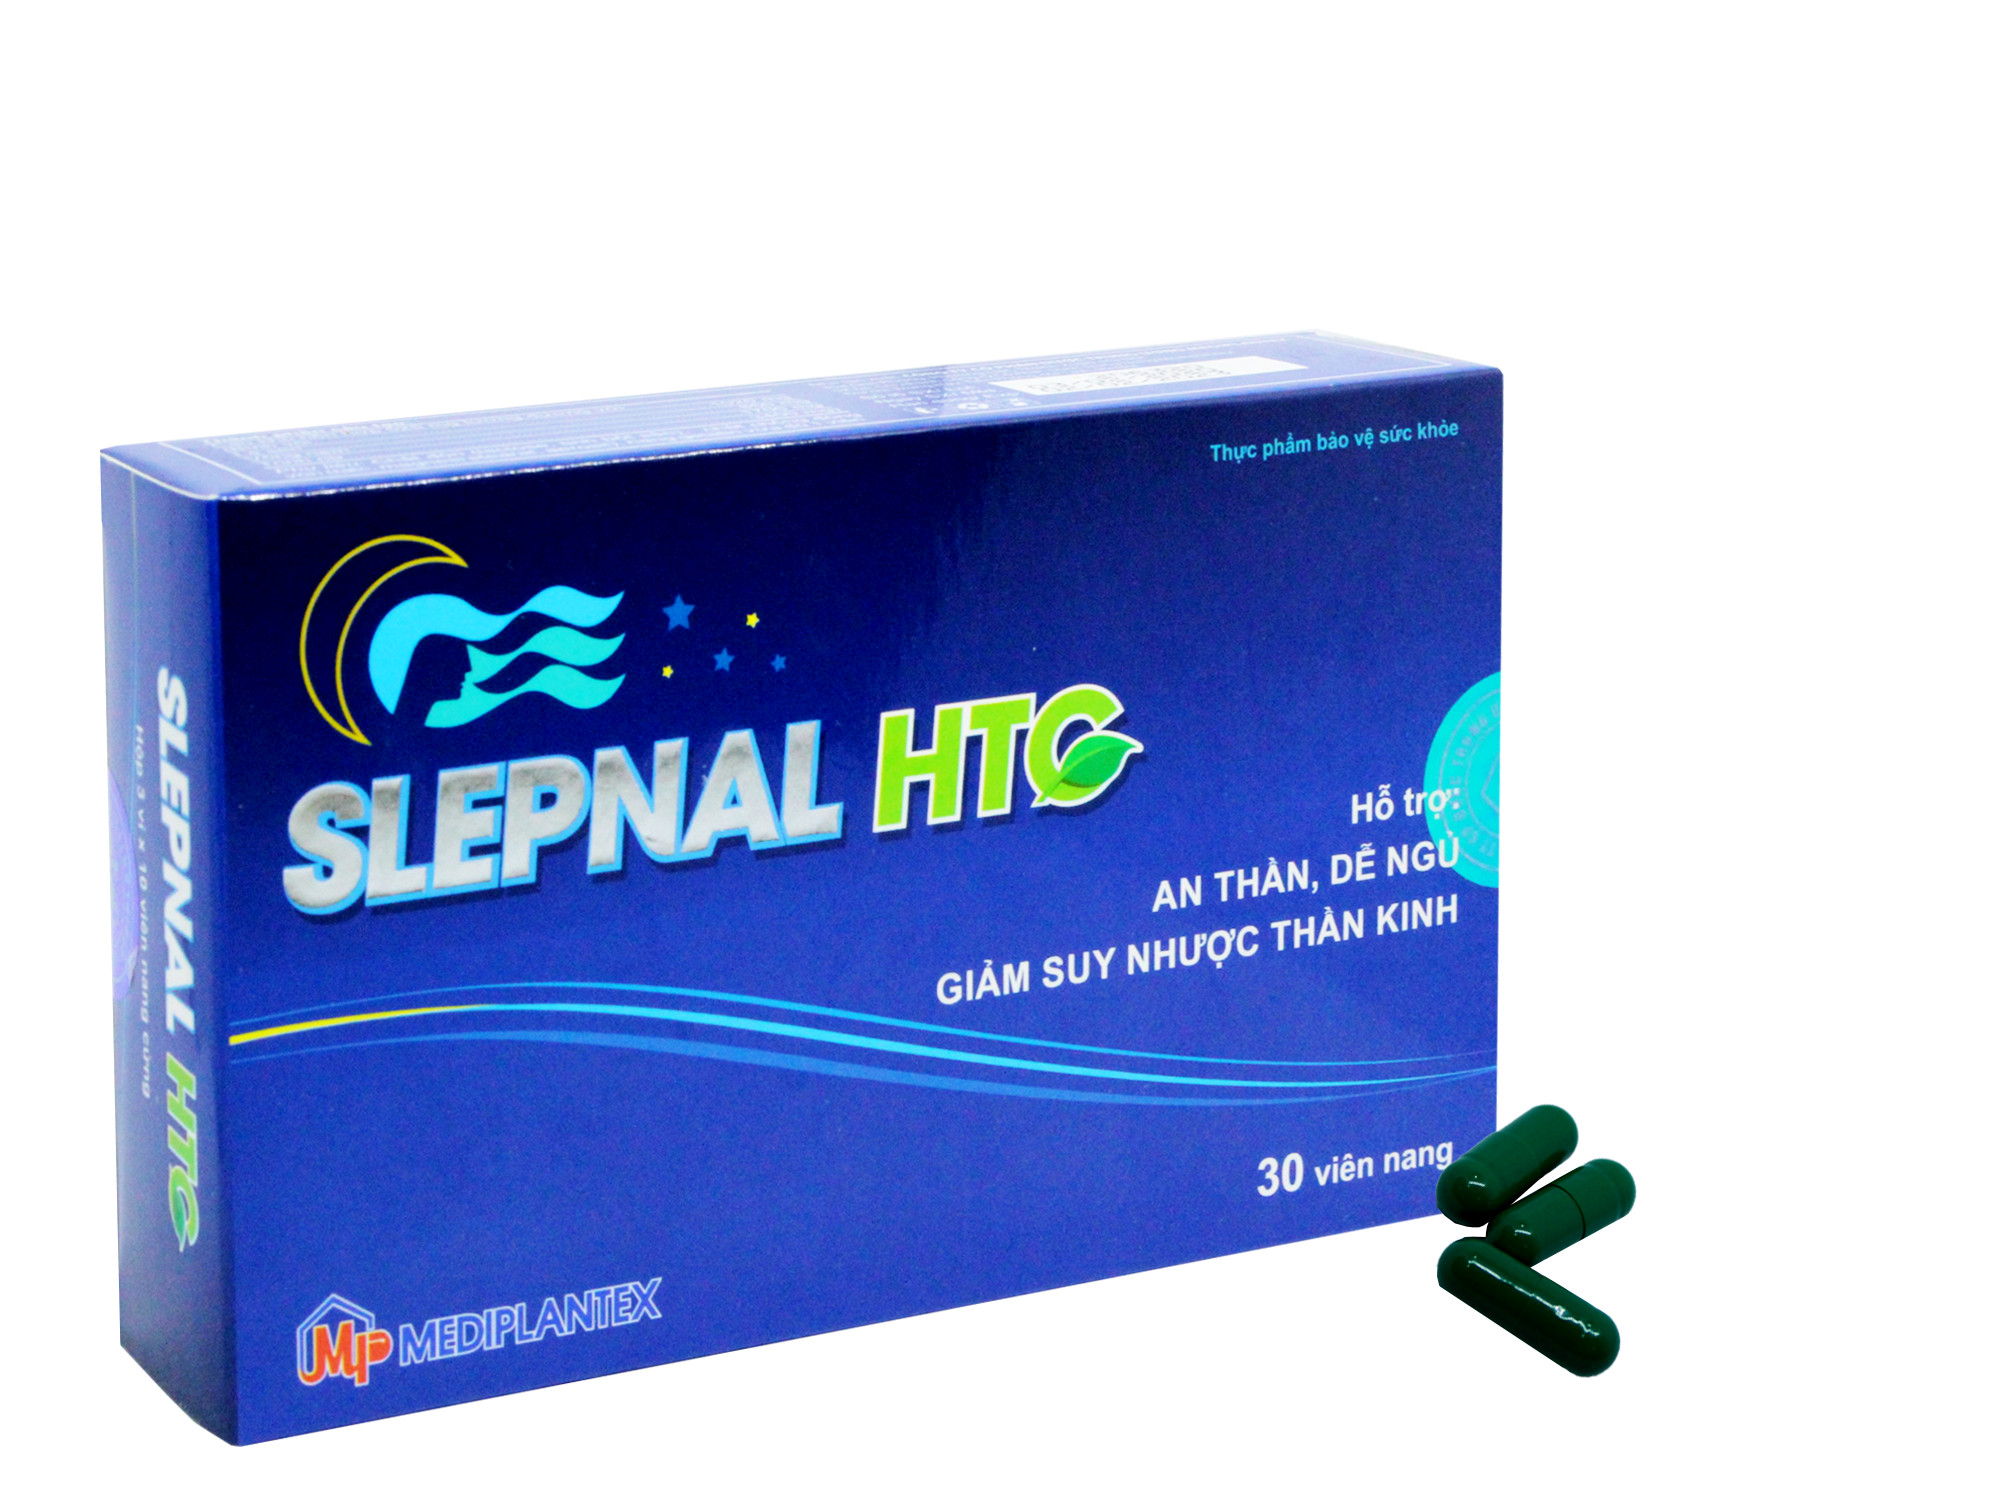 Viên uống hỗ trợ giác ngủ - Giảm suy nhược thần kinh SLEPNAL HTC - Mediplantex